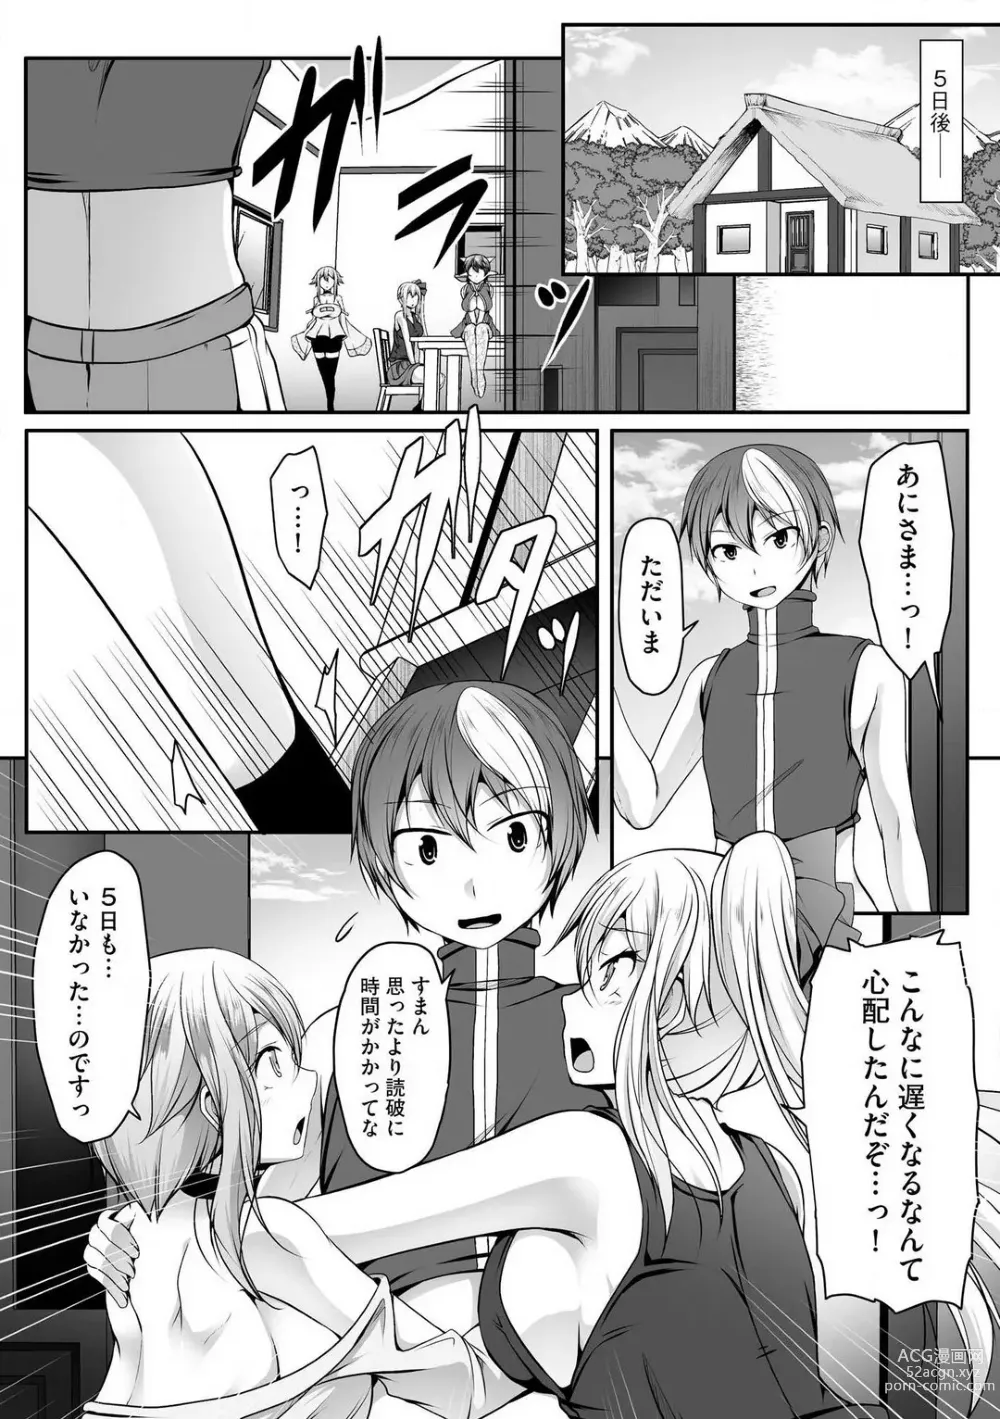 Page 343 of manga Cheat Skill Shihai